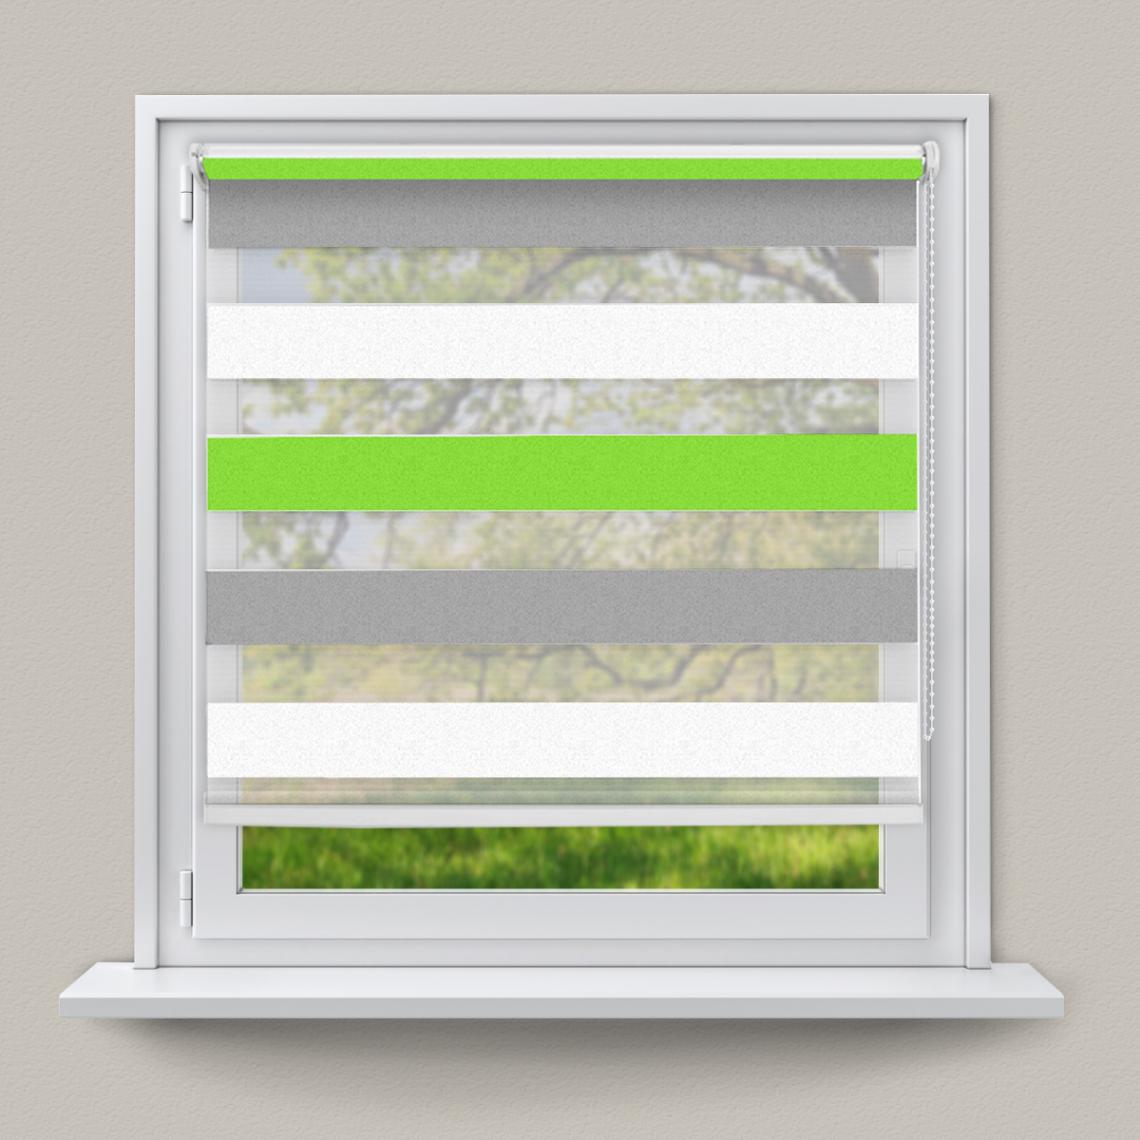 Ecd Germany - Store double enrouleur à chaîne pour fenêtre Klemmfix 60x150cm vert gris blanc - Store compatible Velux